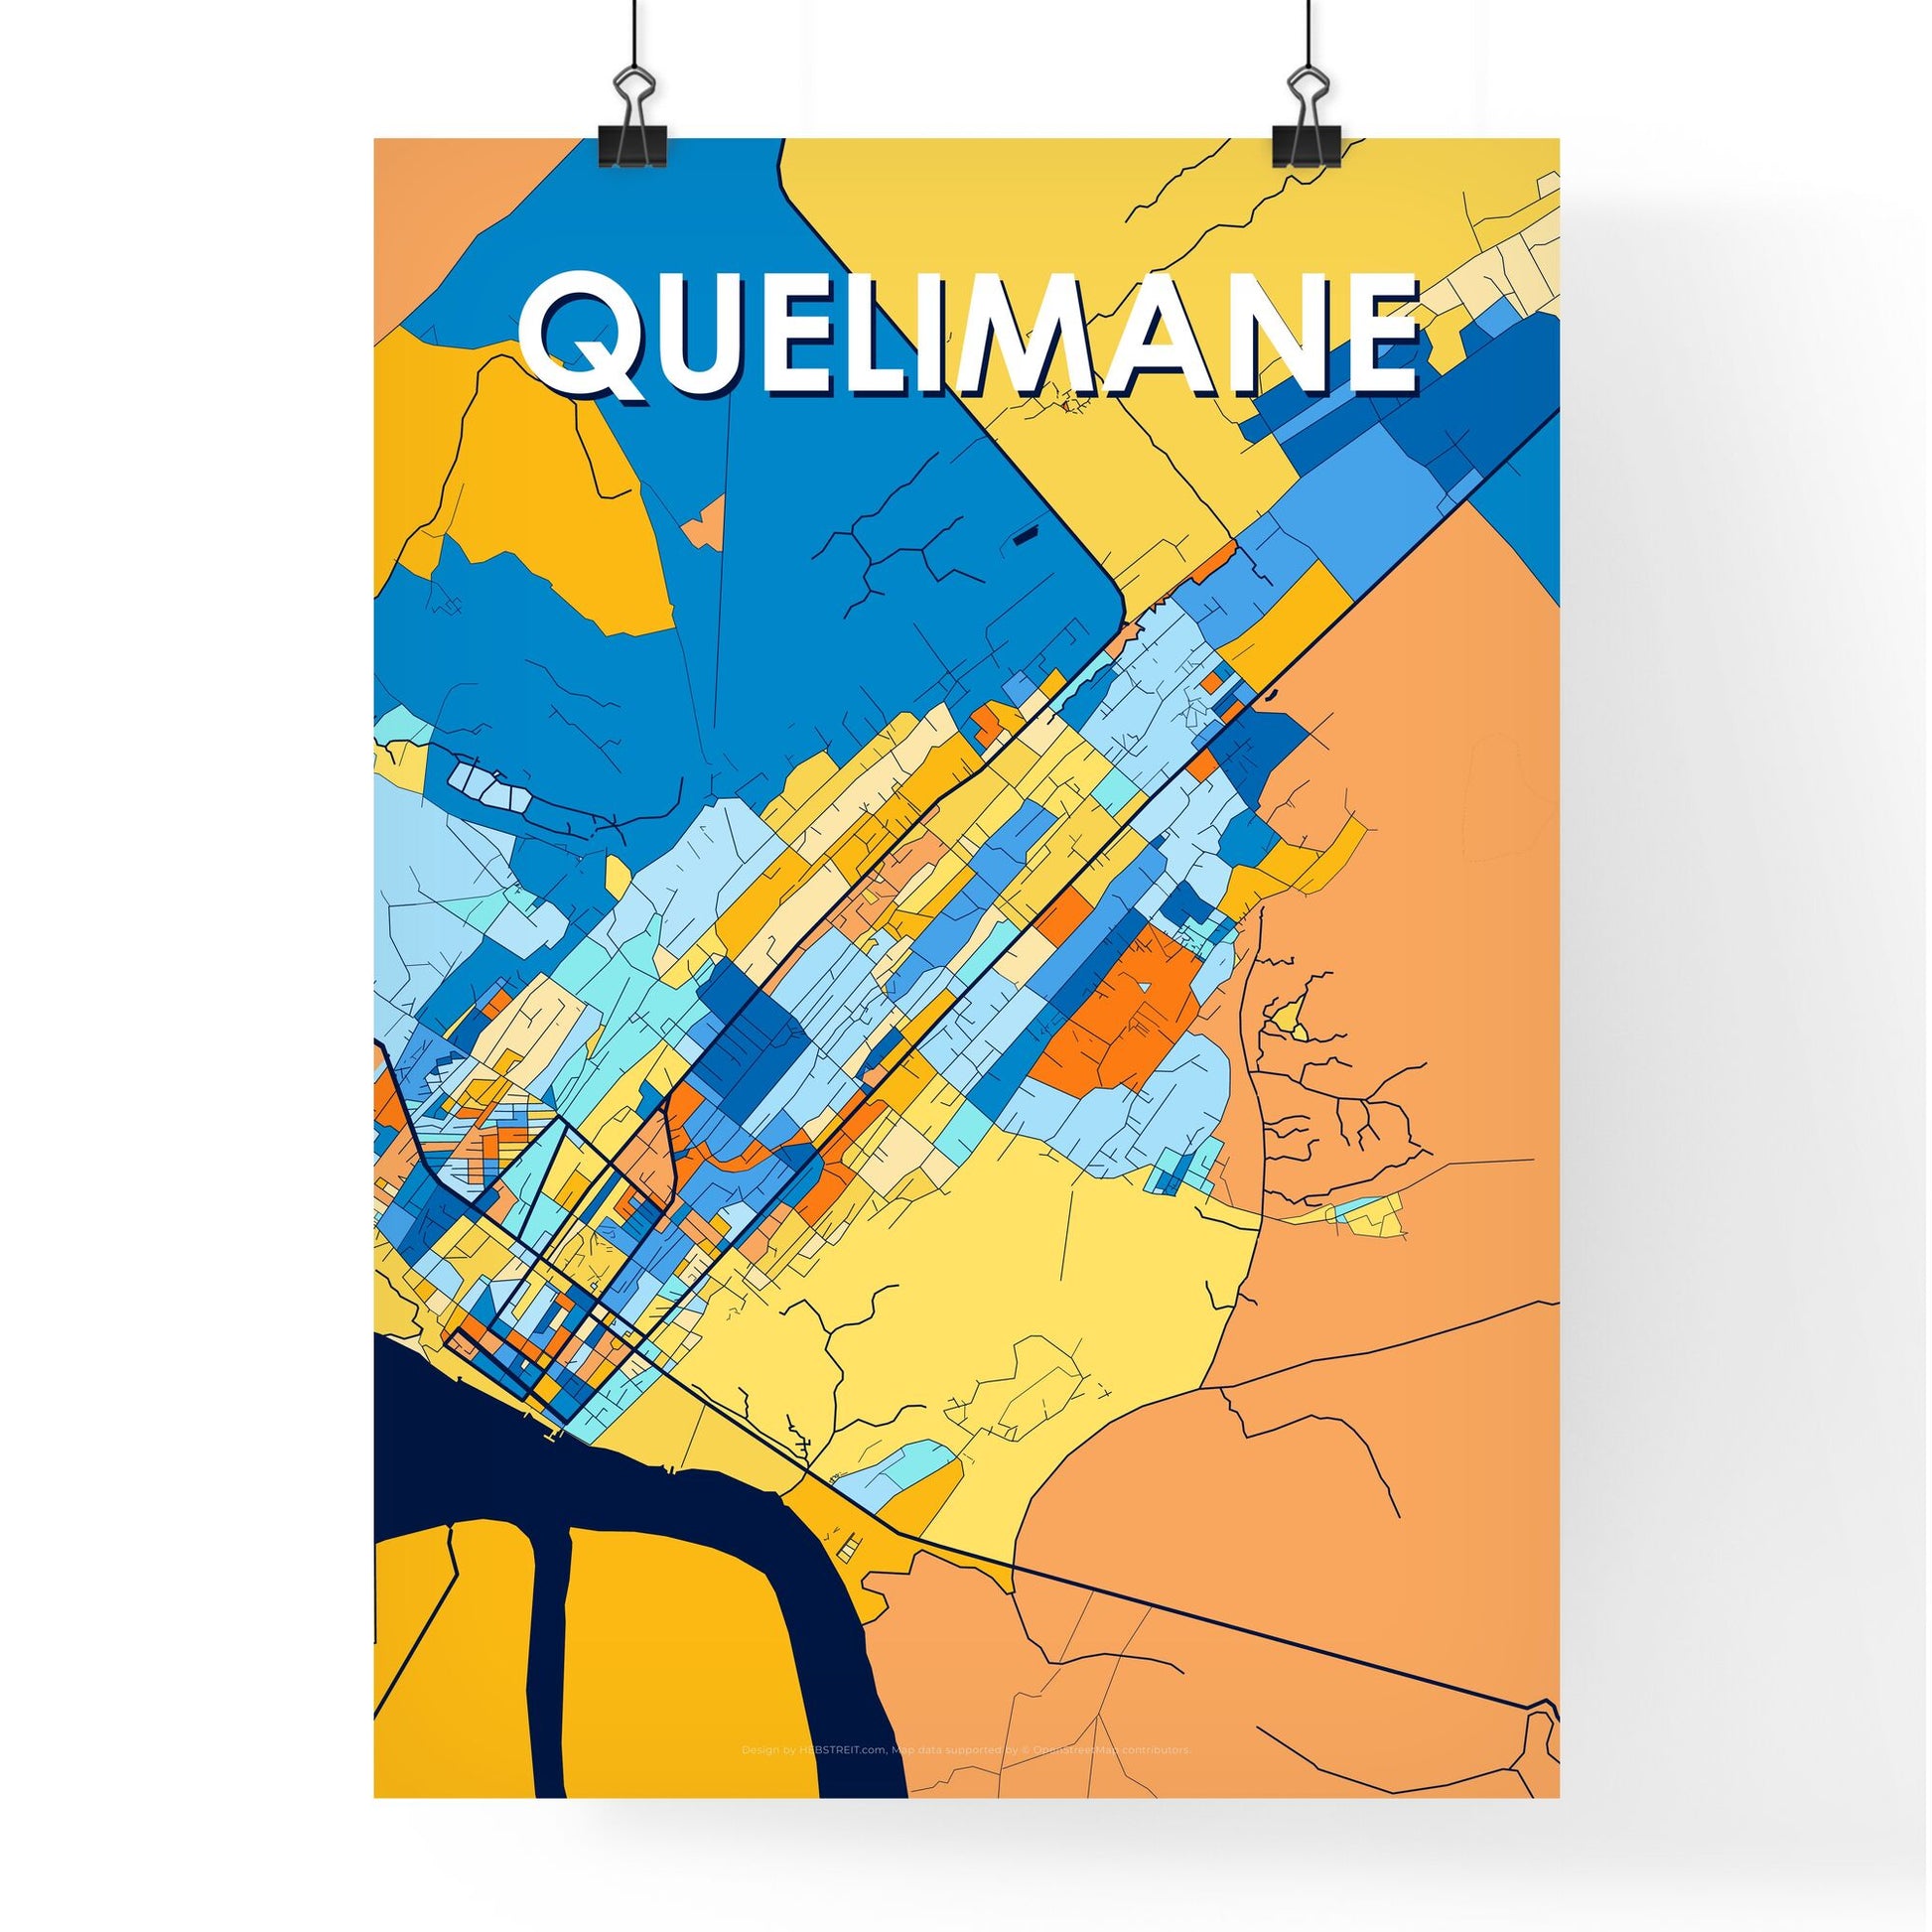 QUELIMANE MOZAMBIQUE Vibrant Colorful Art Map Poster Blue Orange